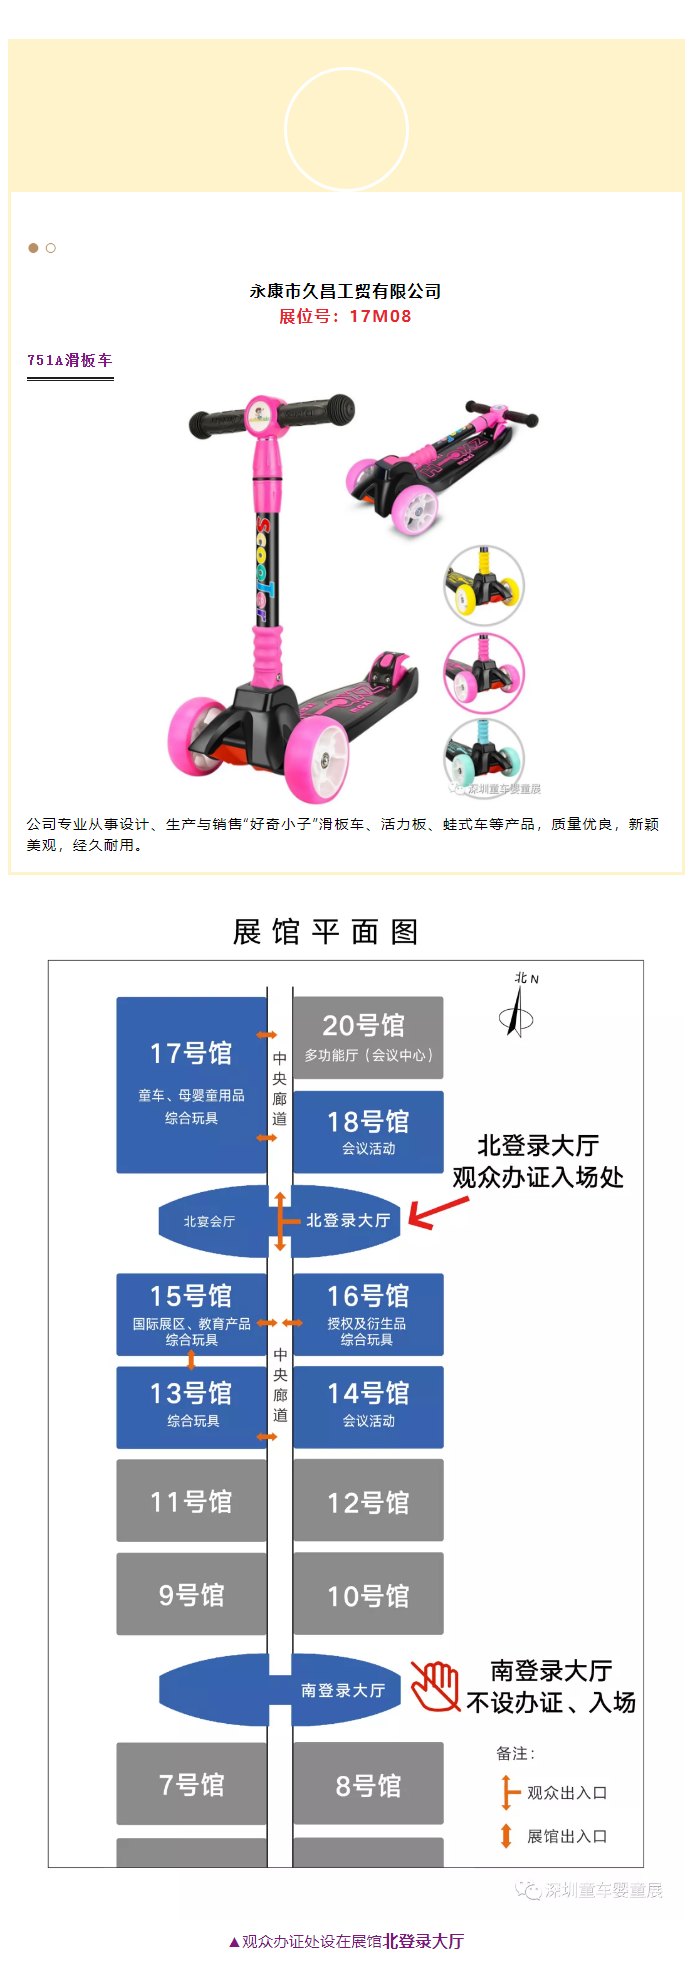 2021深圳童车婴童展大批新品即将登场_r19_c1